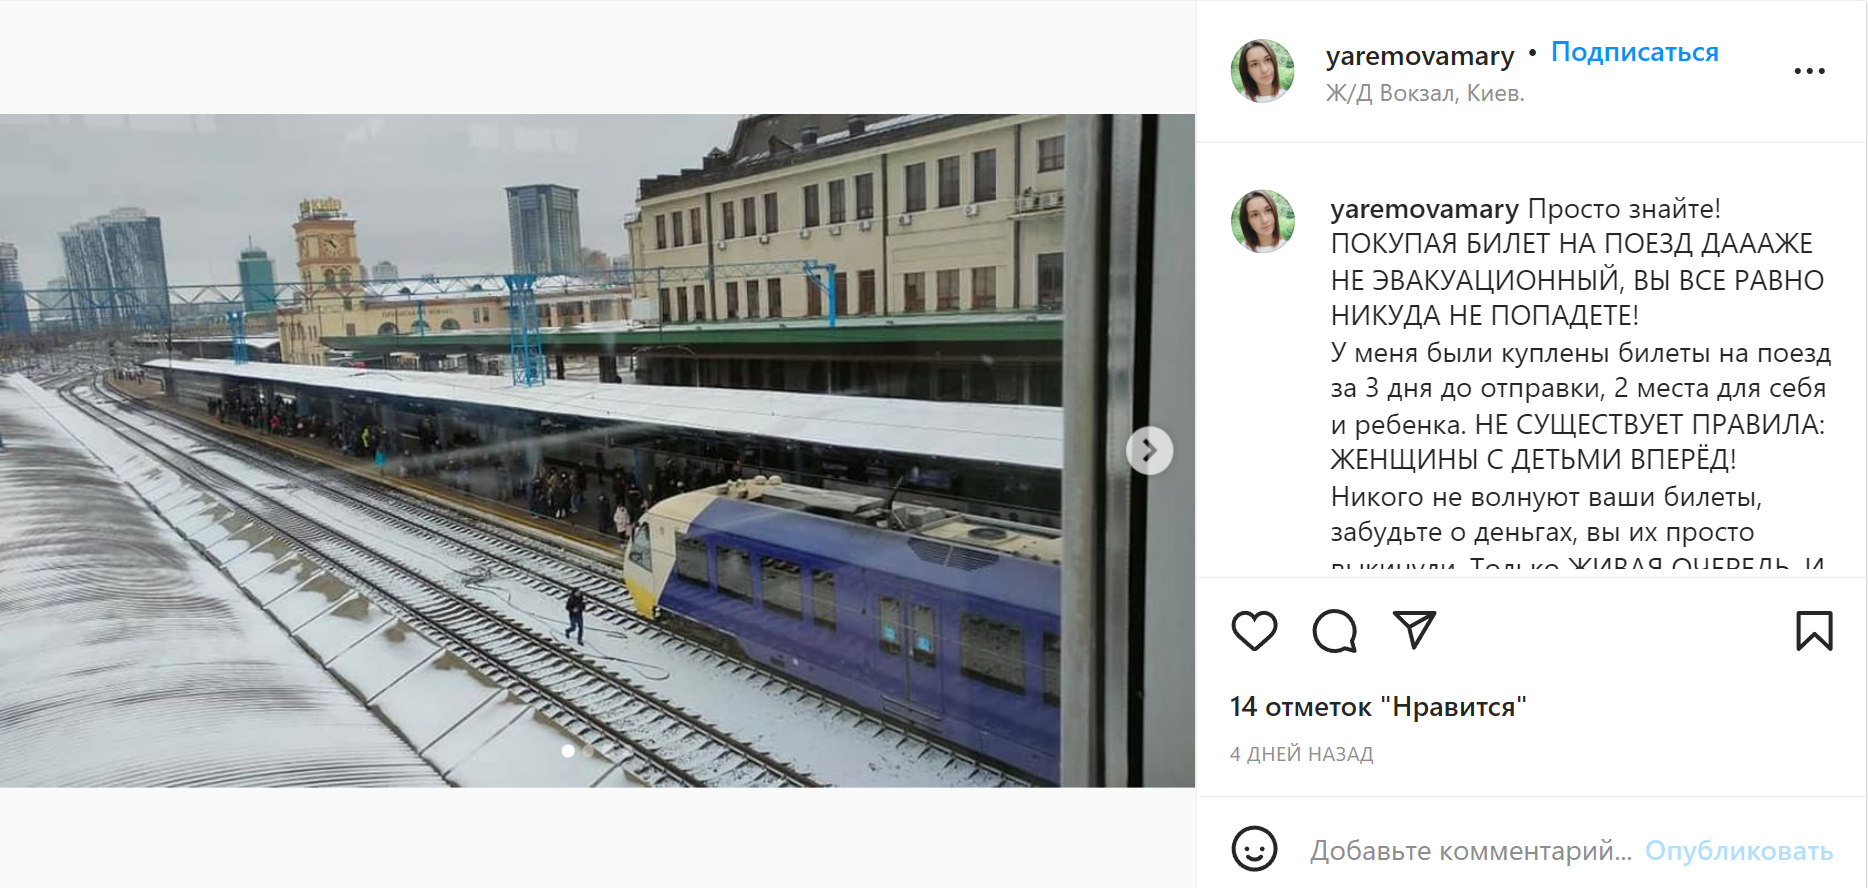 Мария Присухина опубликовала в «Инстаграме» пост, в котором рассказала, что не смогла уехать на эвакуационном поезде из Киева. У нее были билеты для себя и ребенка, но попасть в вагон не удалось: было слишком много людей. В итоге оказалось, что билет не важен, в поезд сажают в порядке очереди. Источник: «Инстаграм»